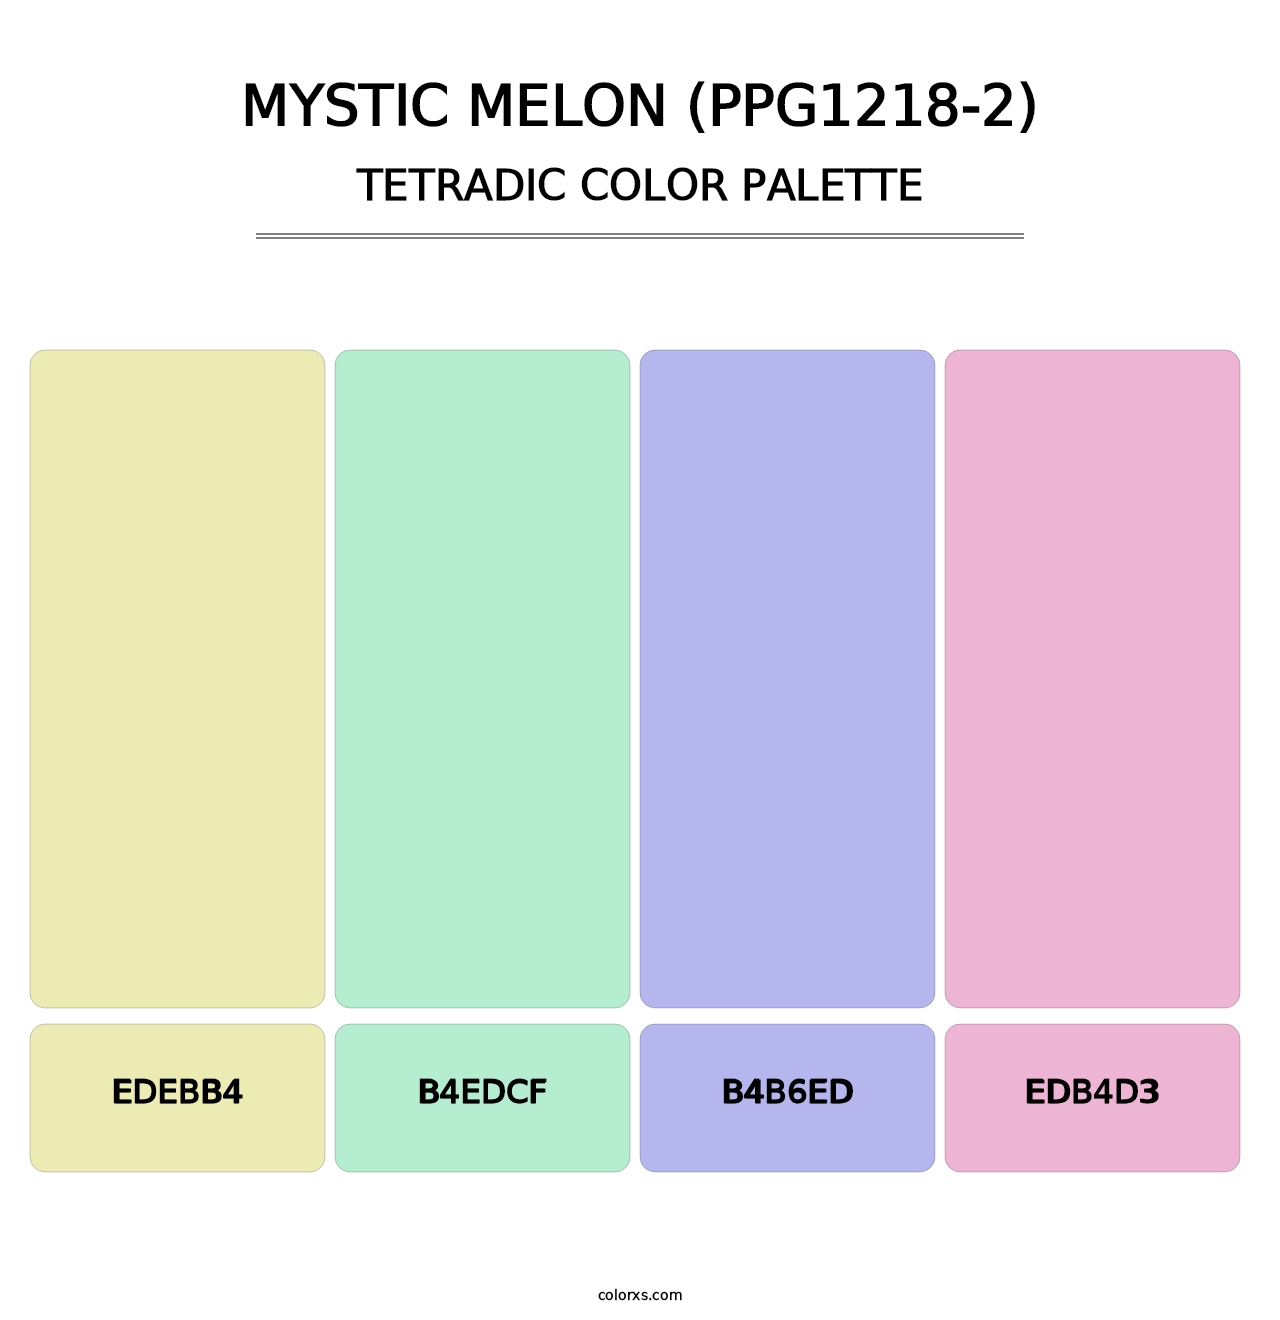 Mystic Melon (PPG1218-2) - Tetradic Color Palette